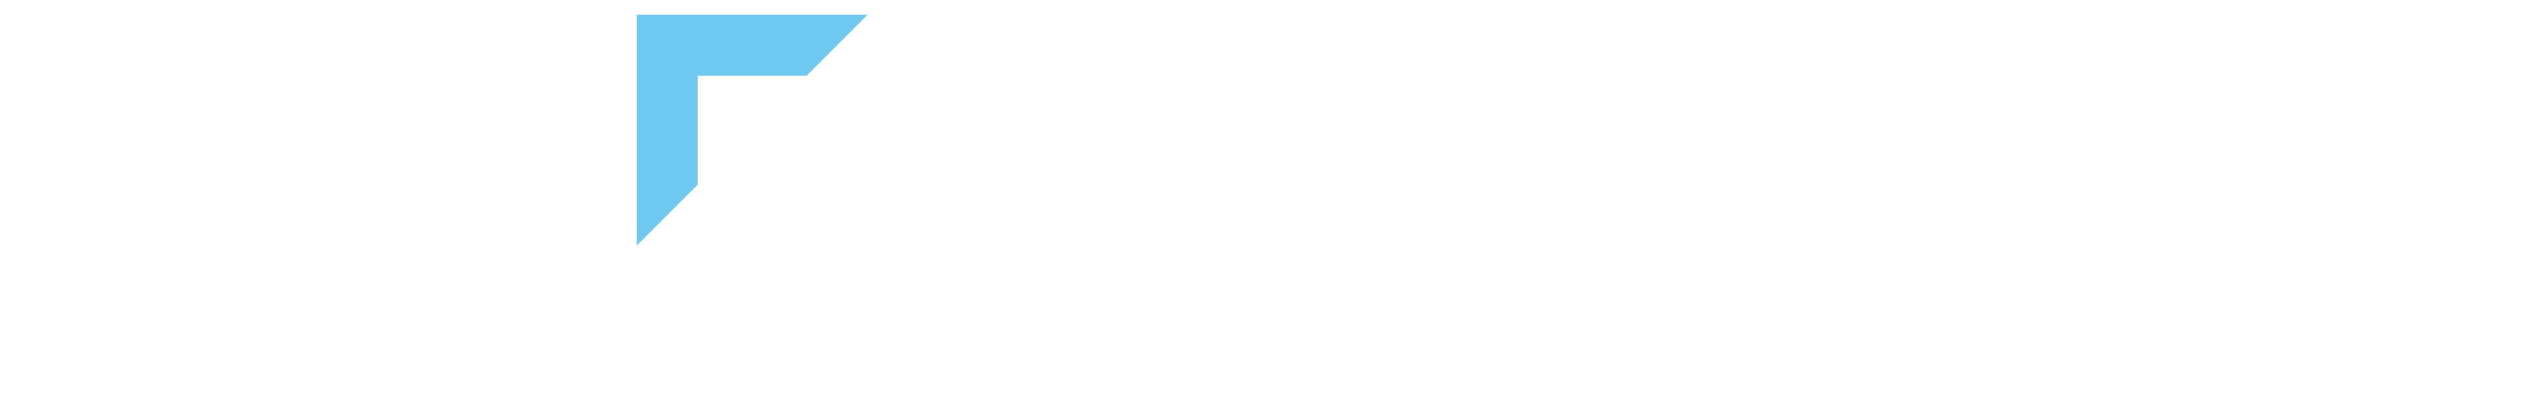 INFO new logo-思源黑-白蓝